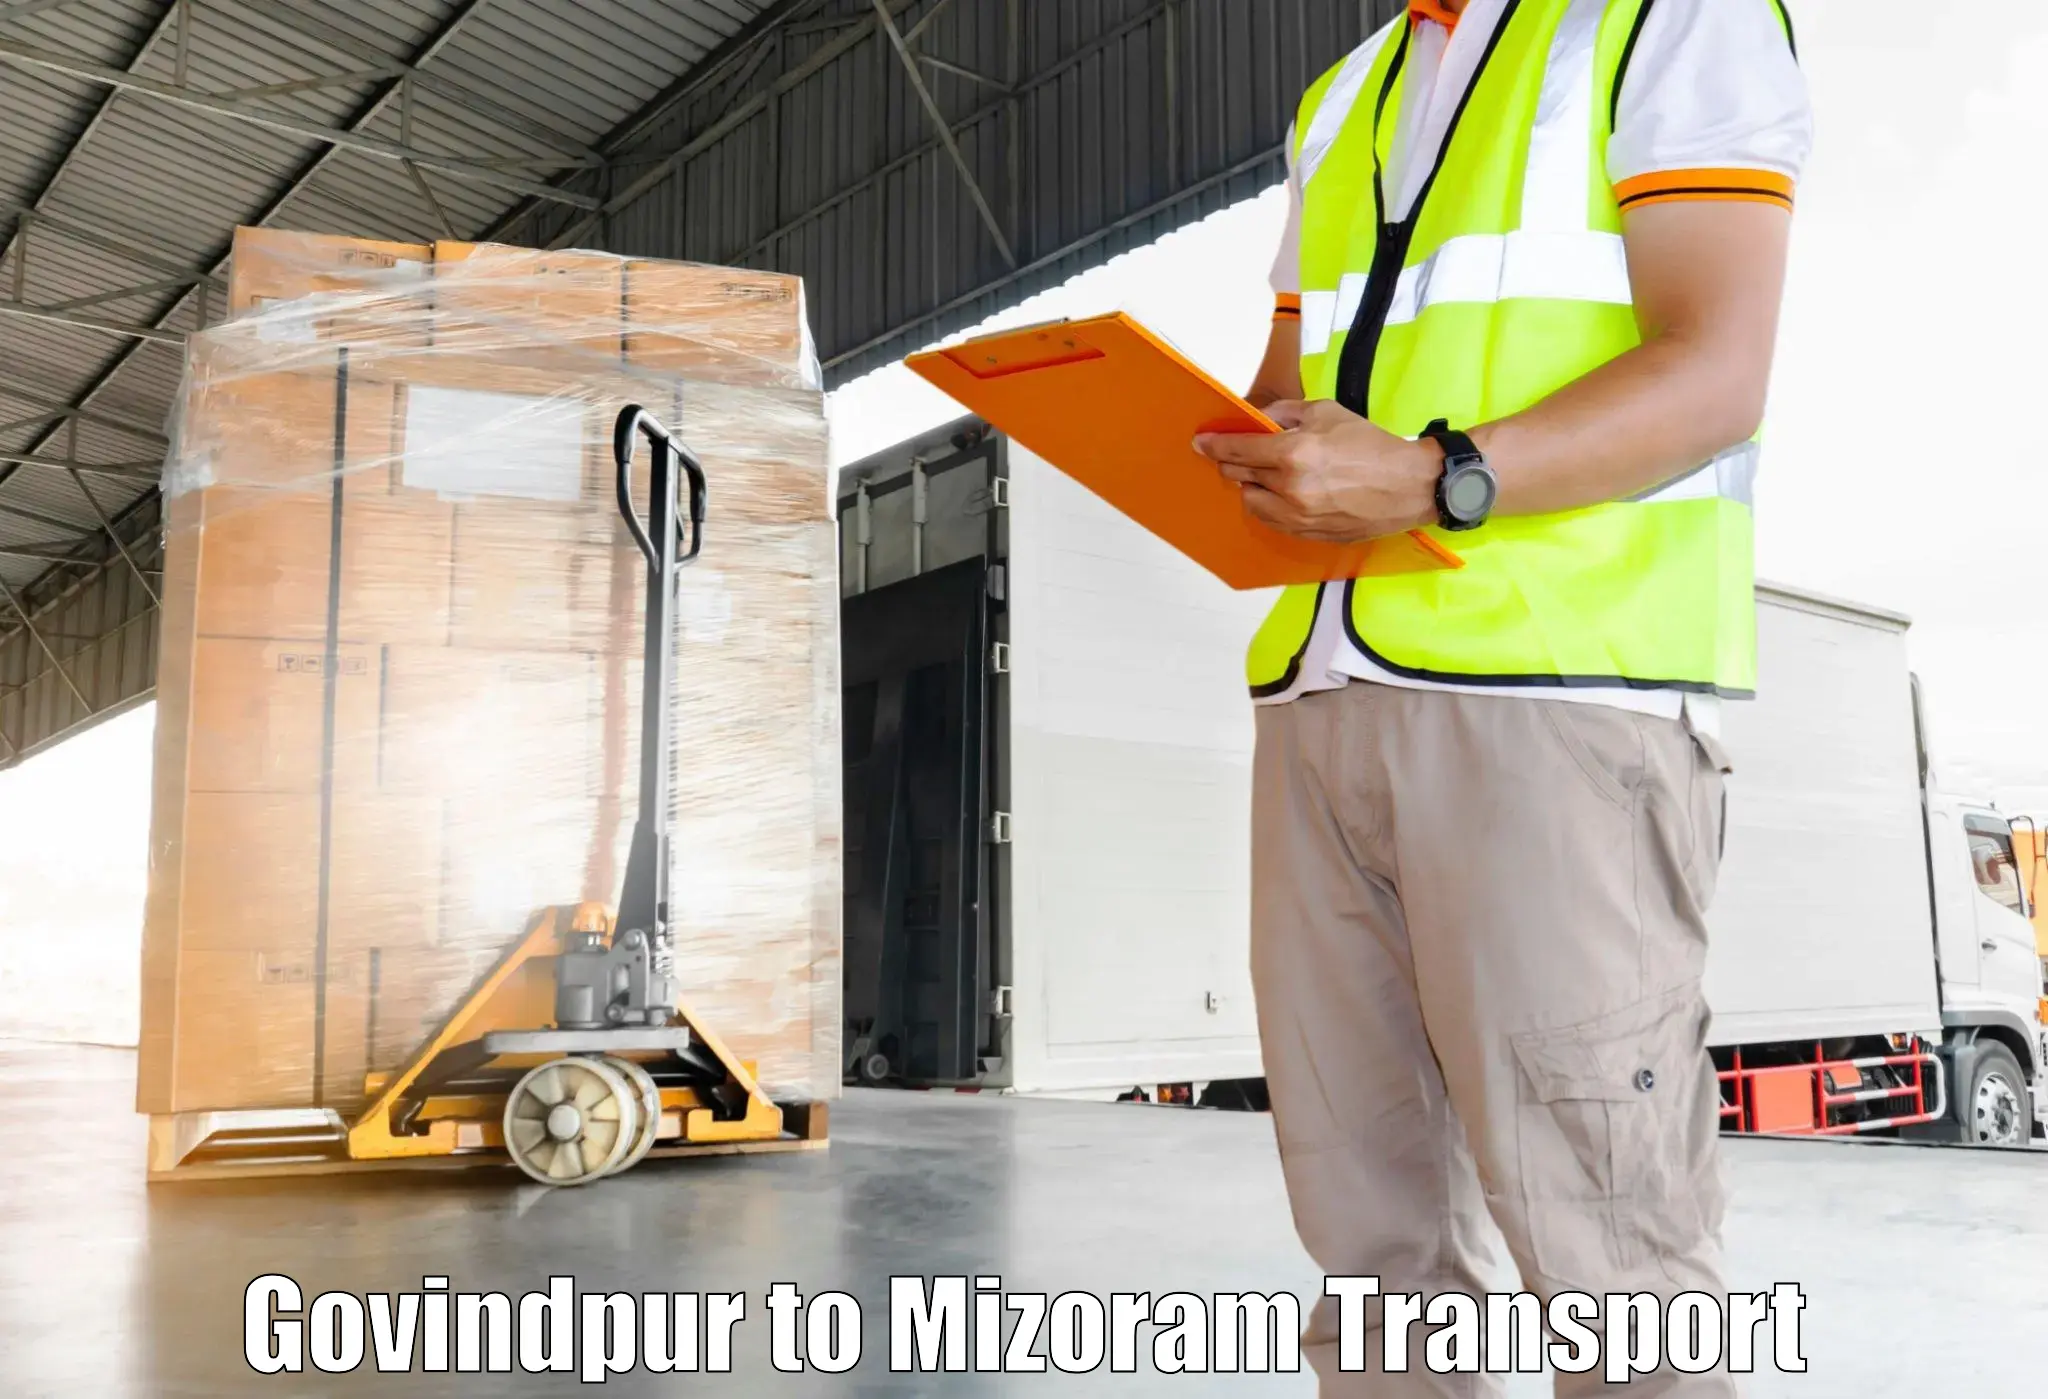 Delivery service Govindpur to Mizoram